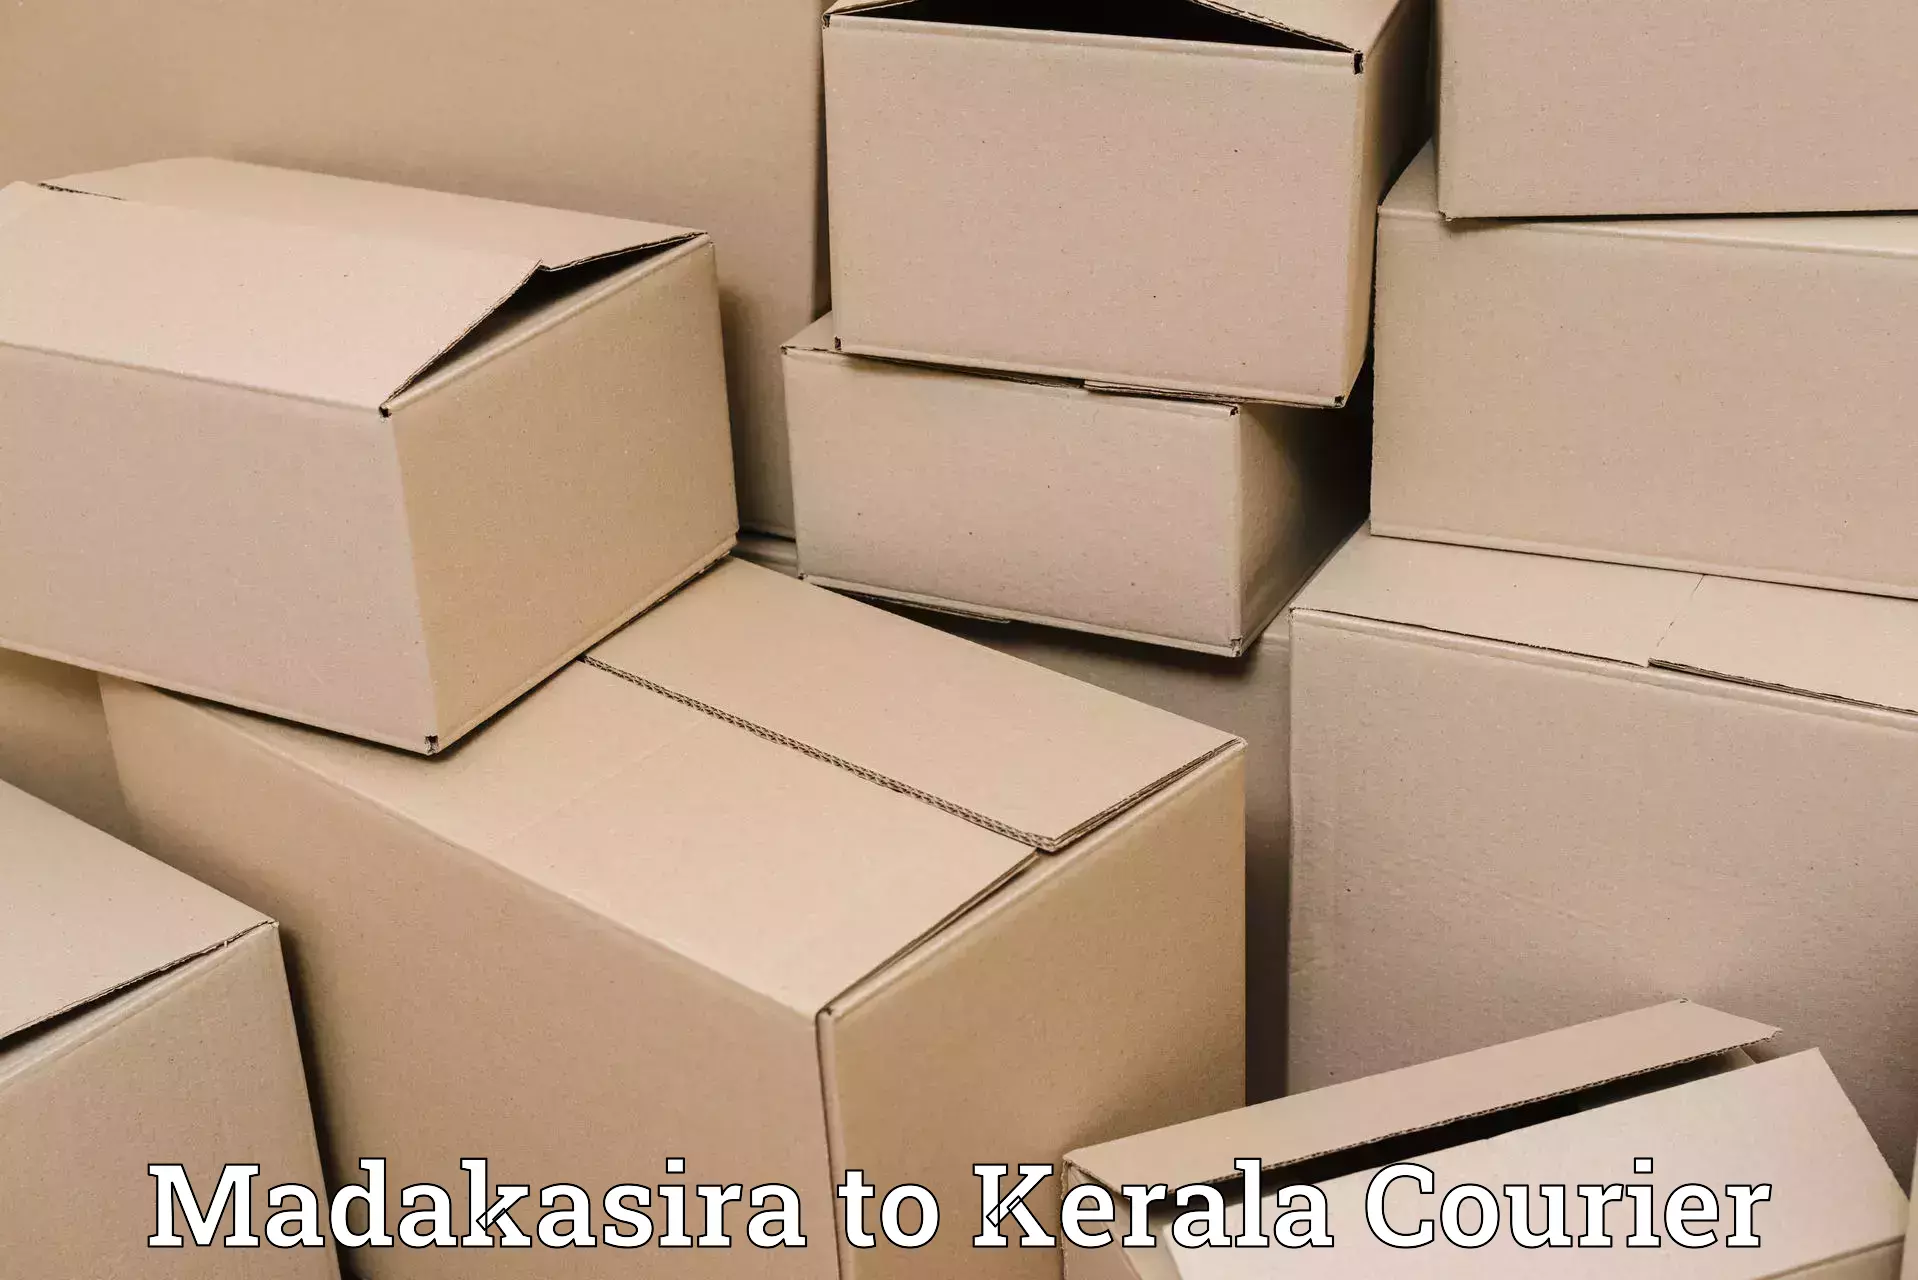 Urgent courier needs Madakasira to IIIT Kottayam